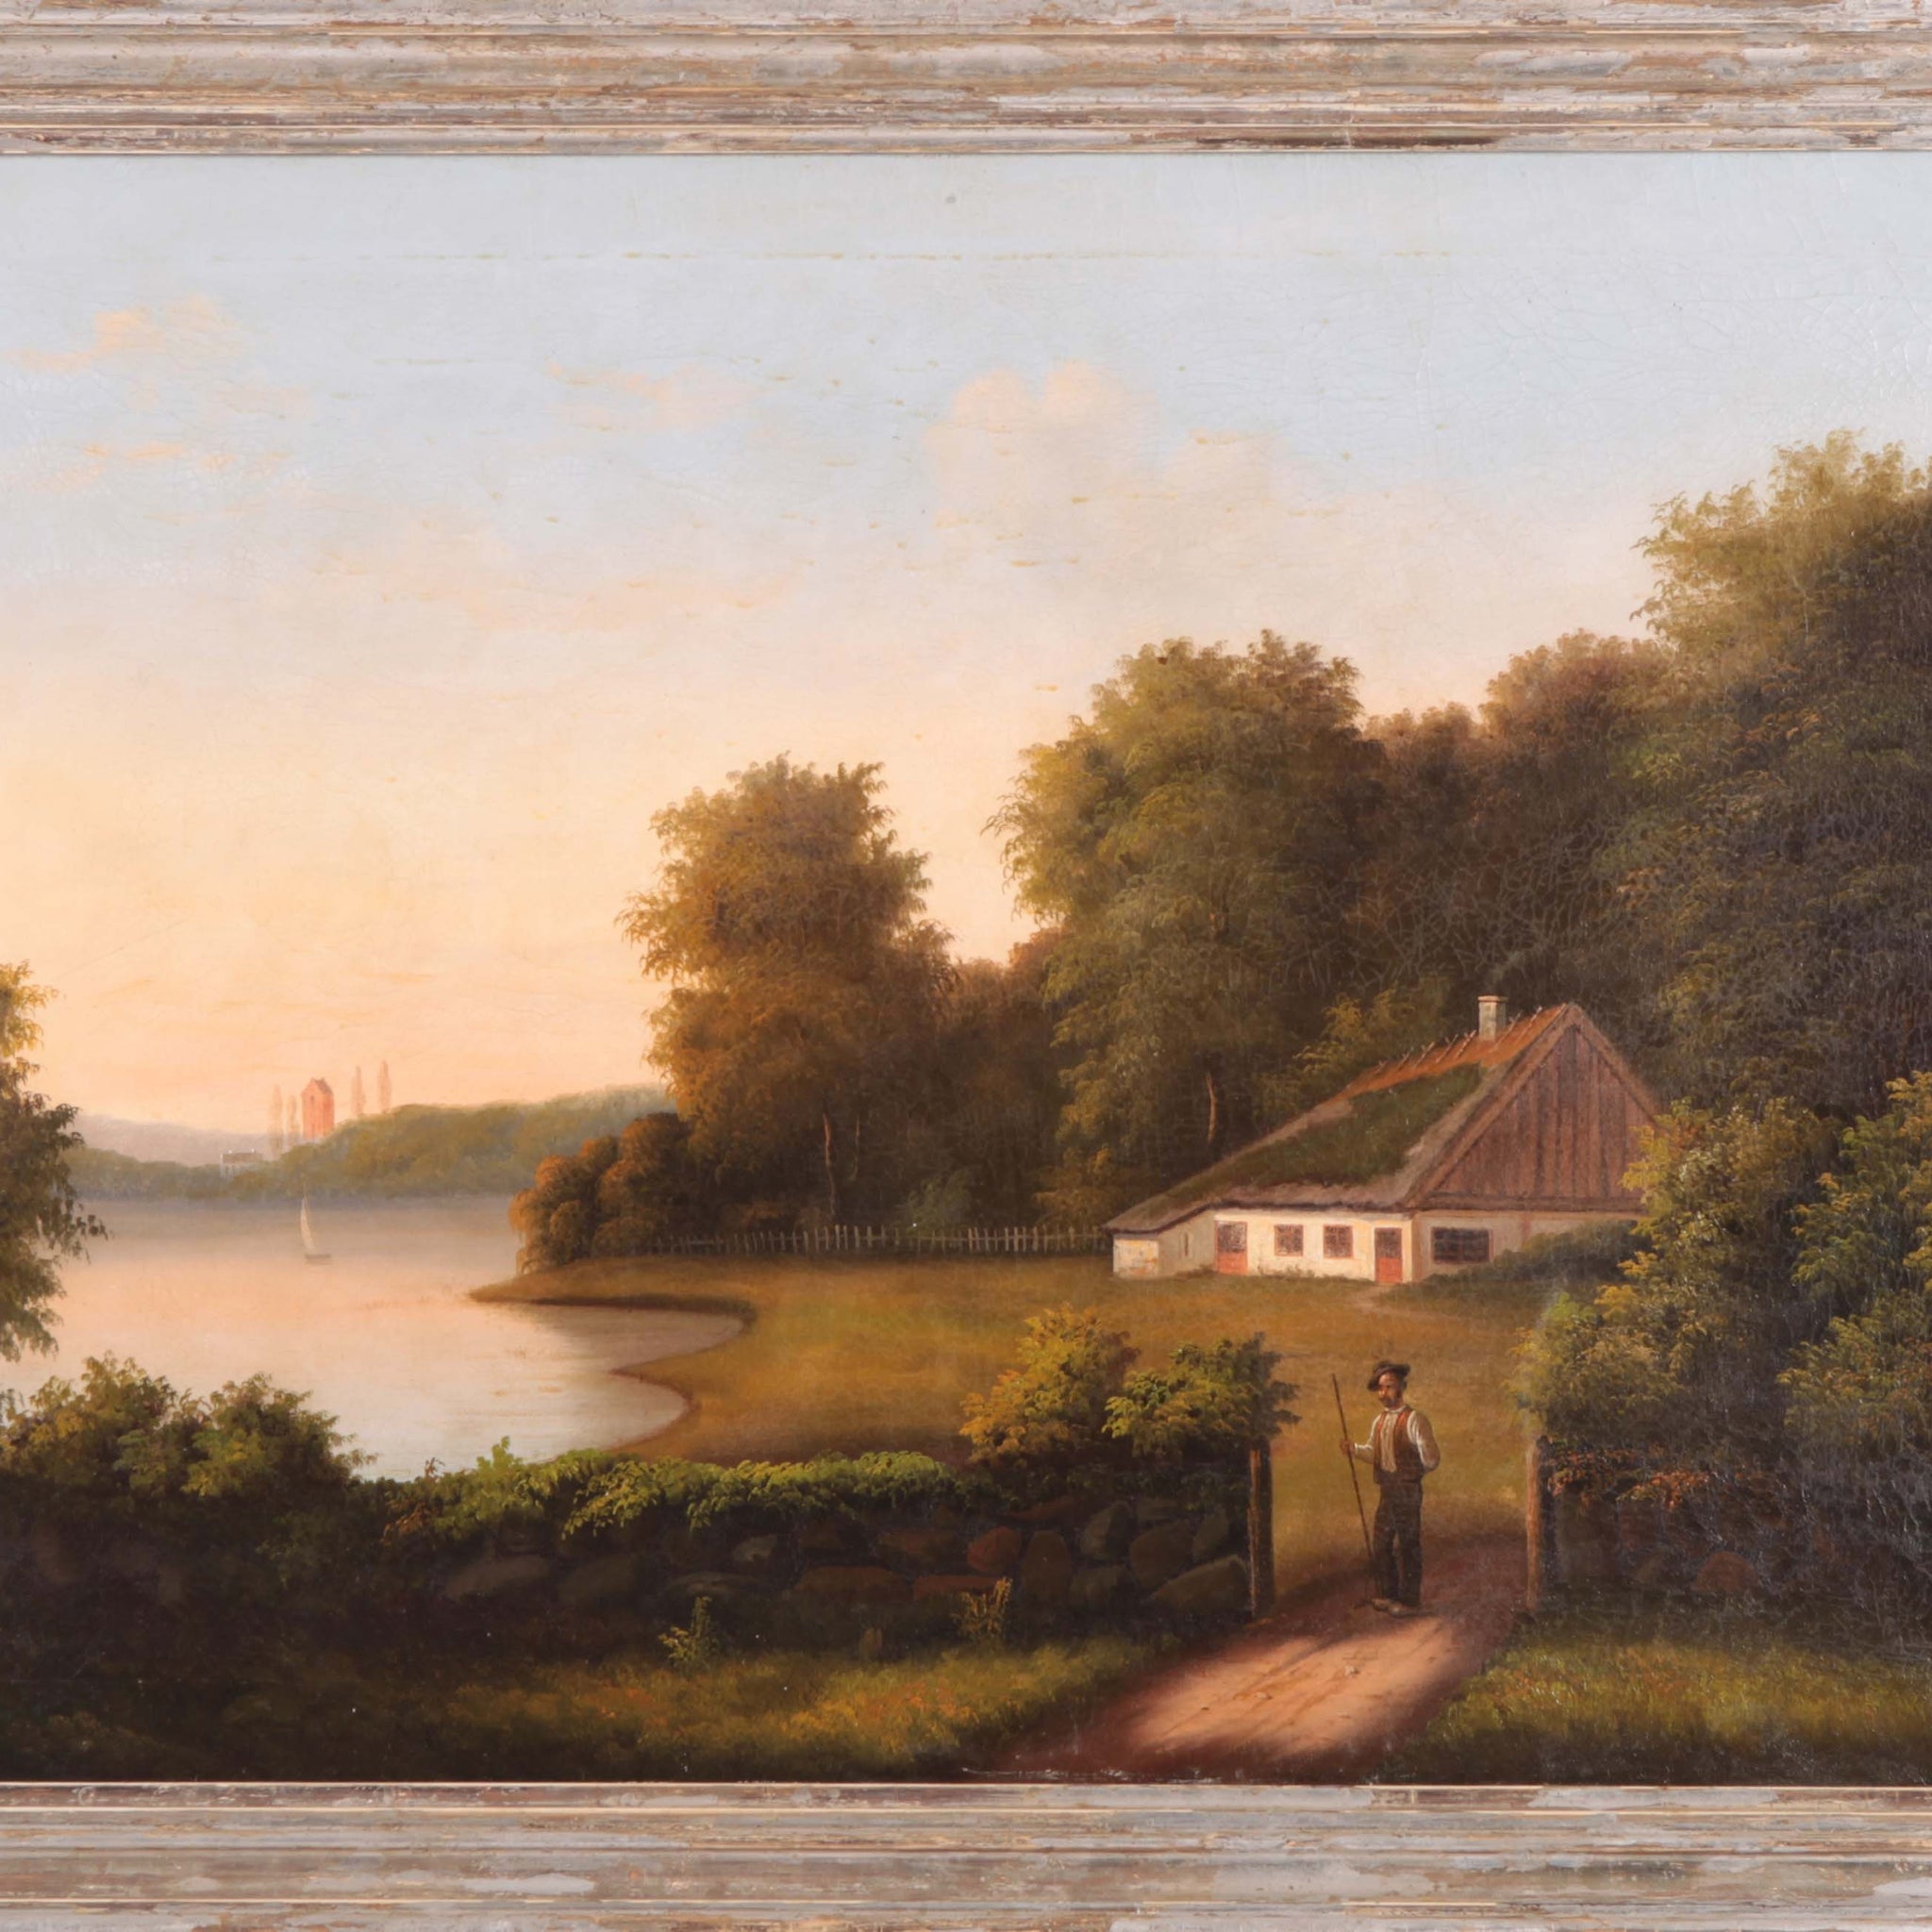 Huile sur toile anglaise ancienne de 1800 à 1900 représentant un paysage rural